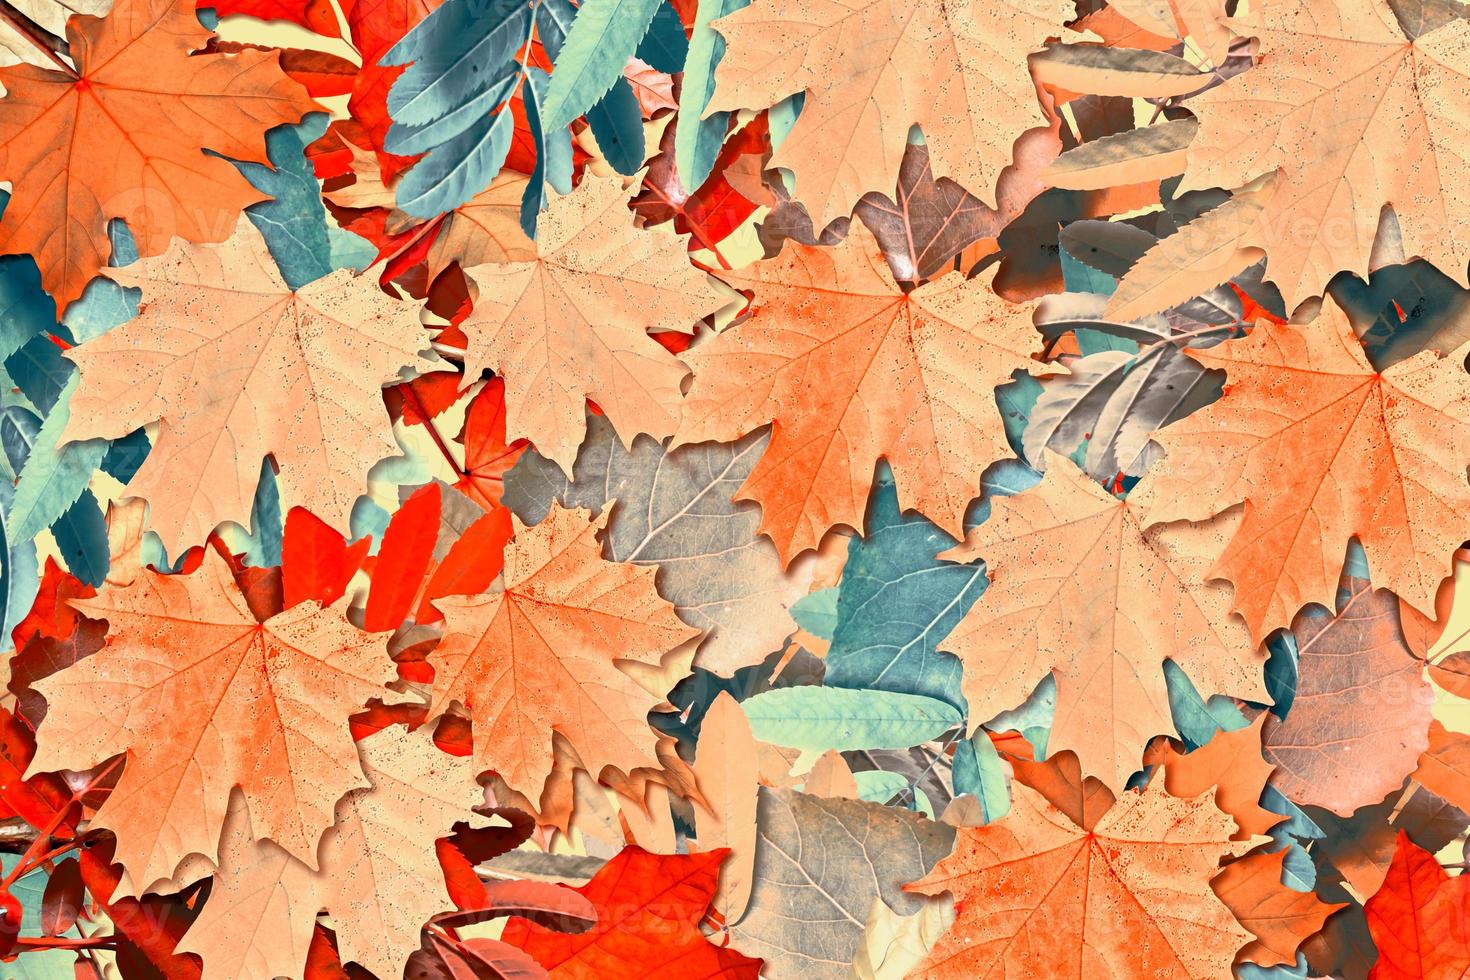 abstracte achtergrond van herfstbladeren foto